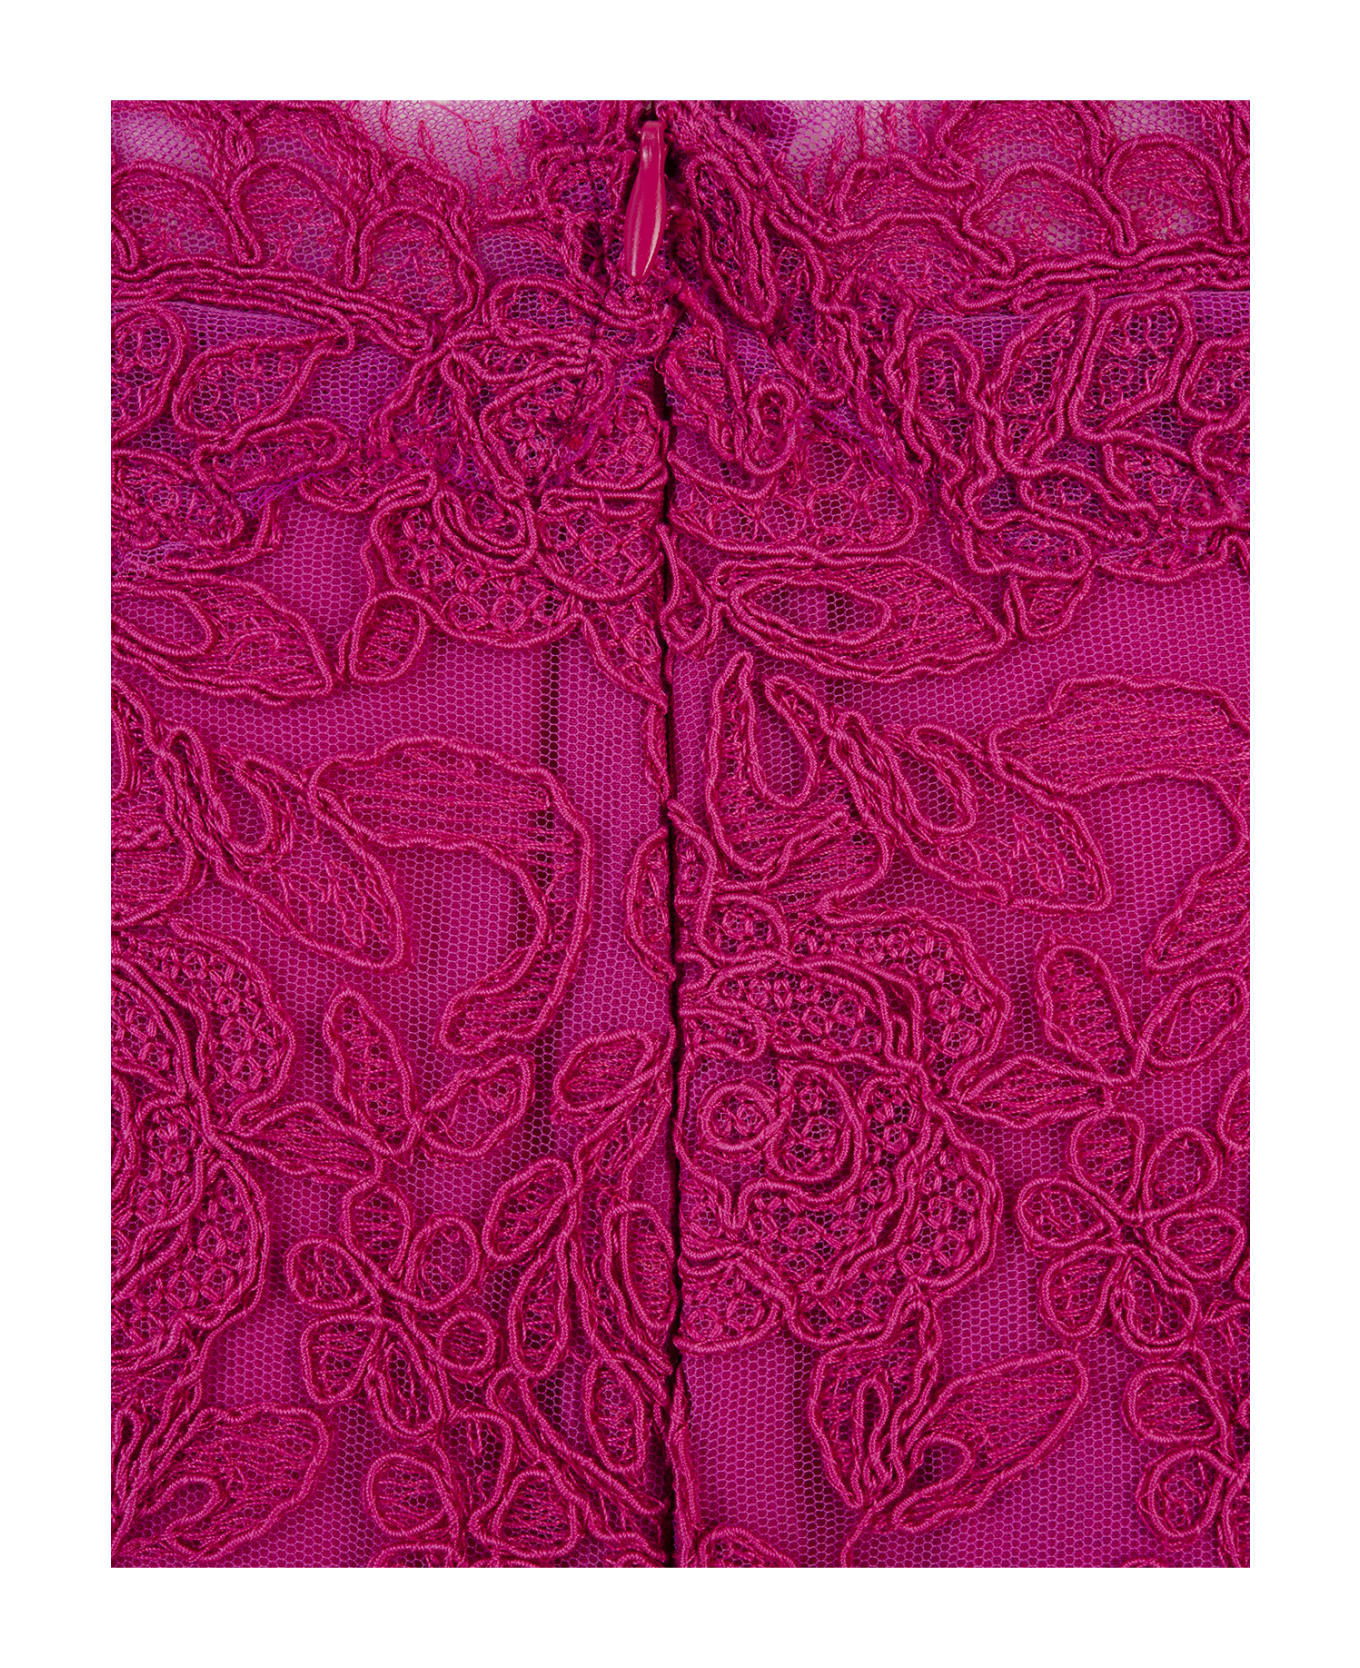 Ermanno Scervino Fuchsia Lace Longuette Skirt - Pink